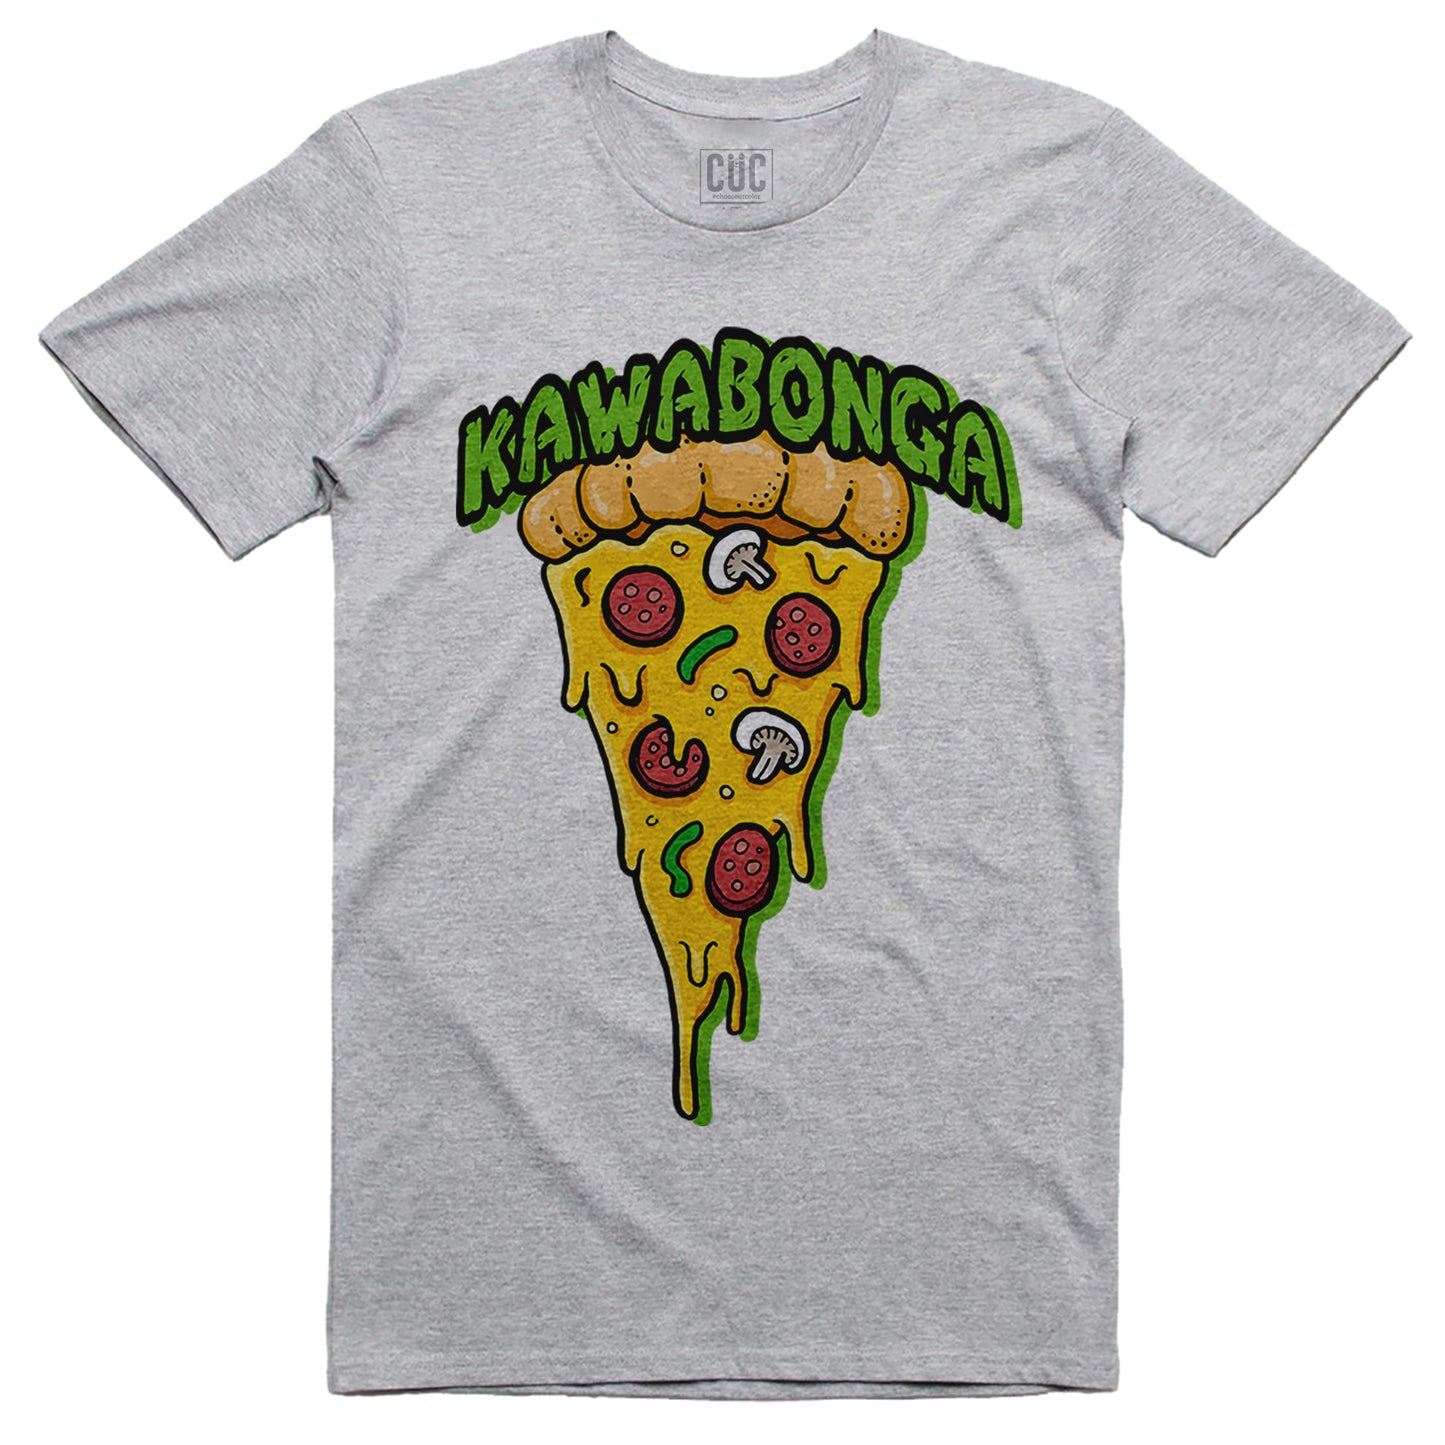 T-Shirt Kawabonga Pizza - le tartaruge - cartoon cult ninja #chooseurcolor - CUC chooseurcolor